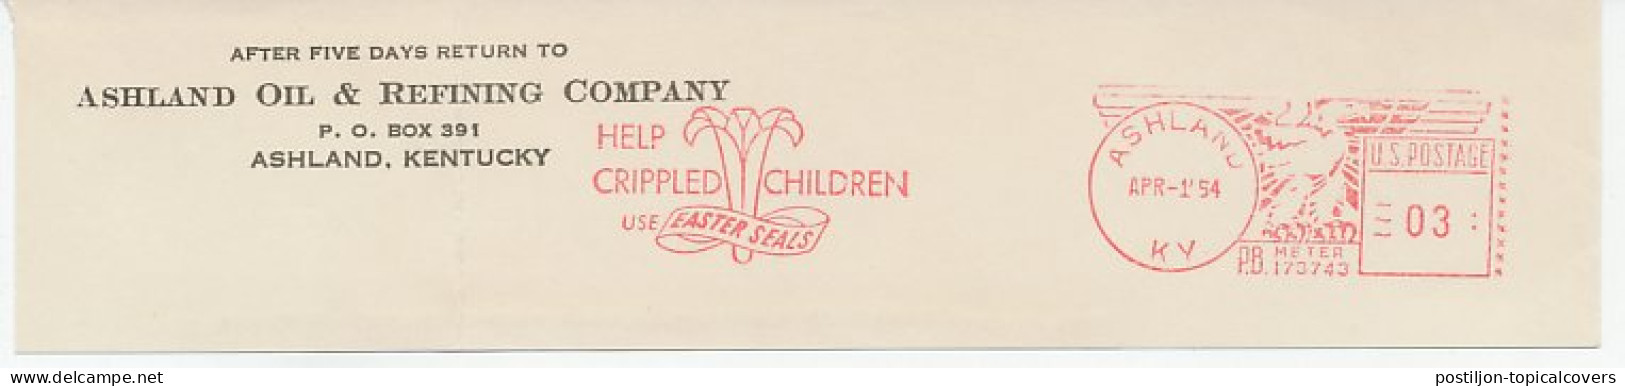 Meter Top Cut USA 1954 Crippled Childeren - Easter Seals - Behinderungen